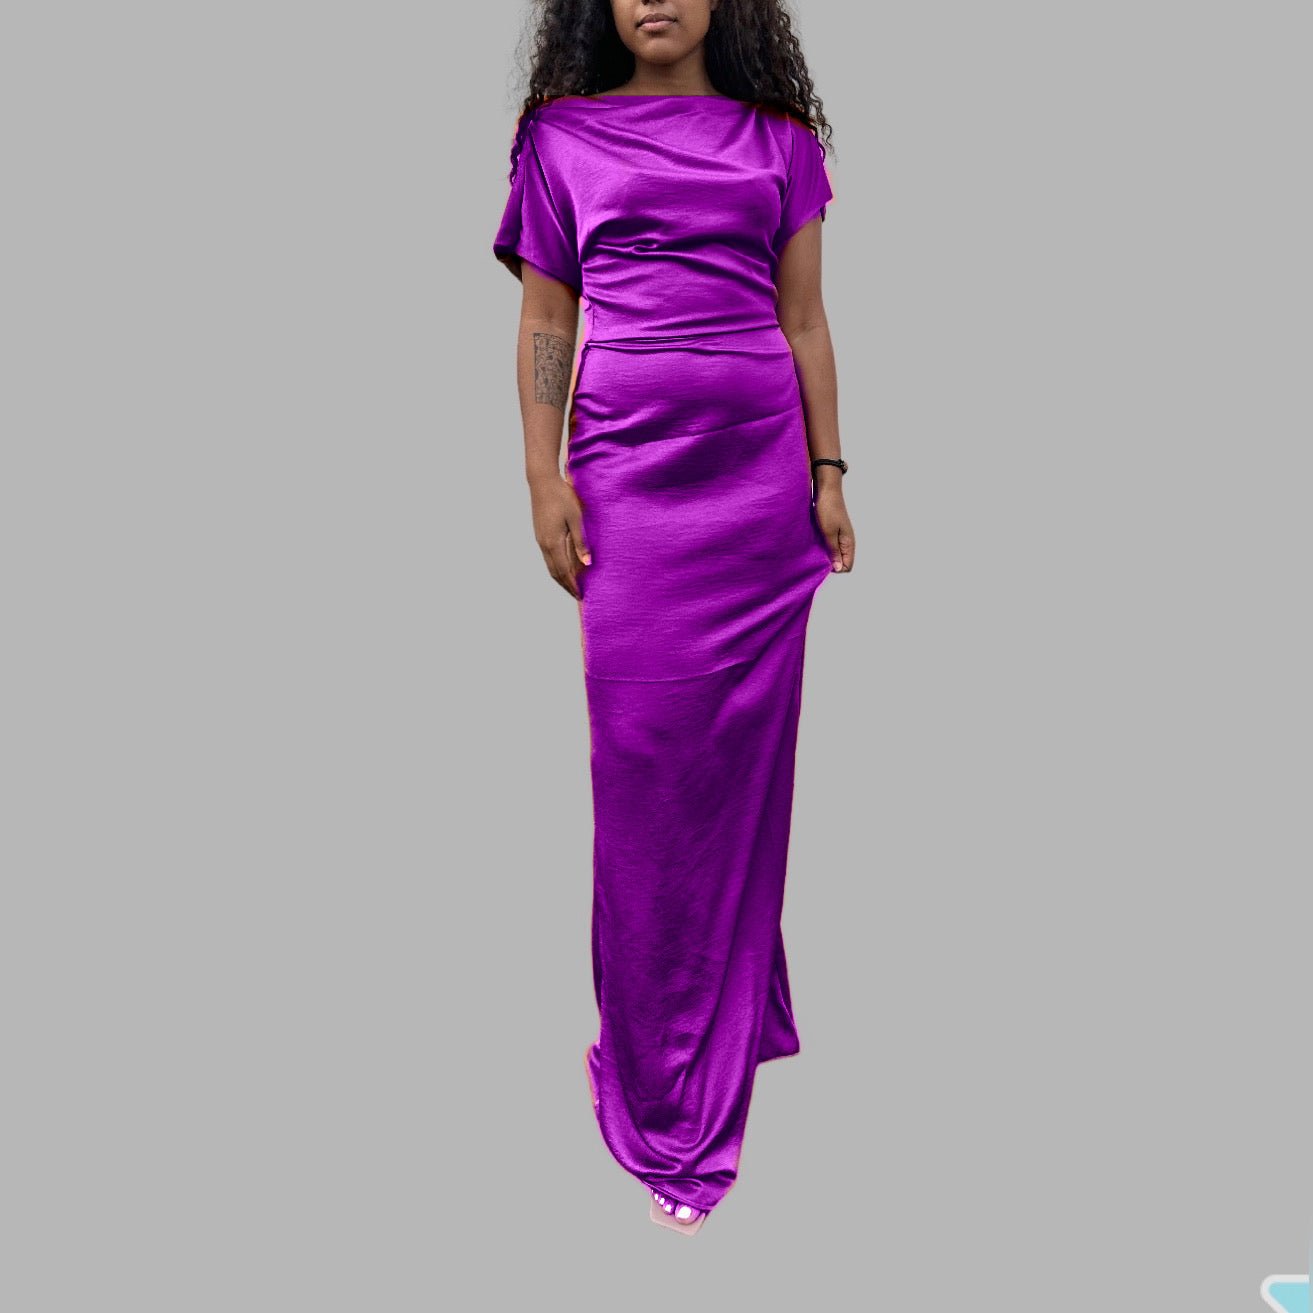 Robe de Soiree Asymétrique - Robe de Soiree longue - Choix de couleurs - Kaysol Couture